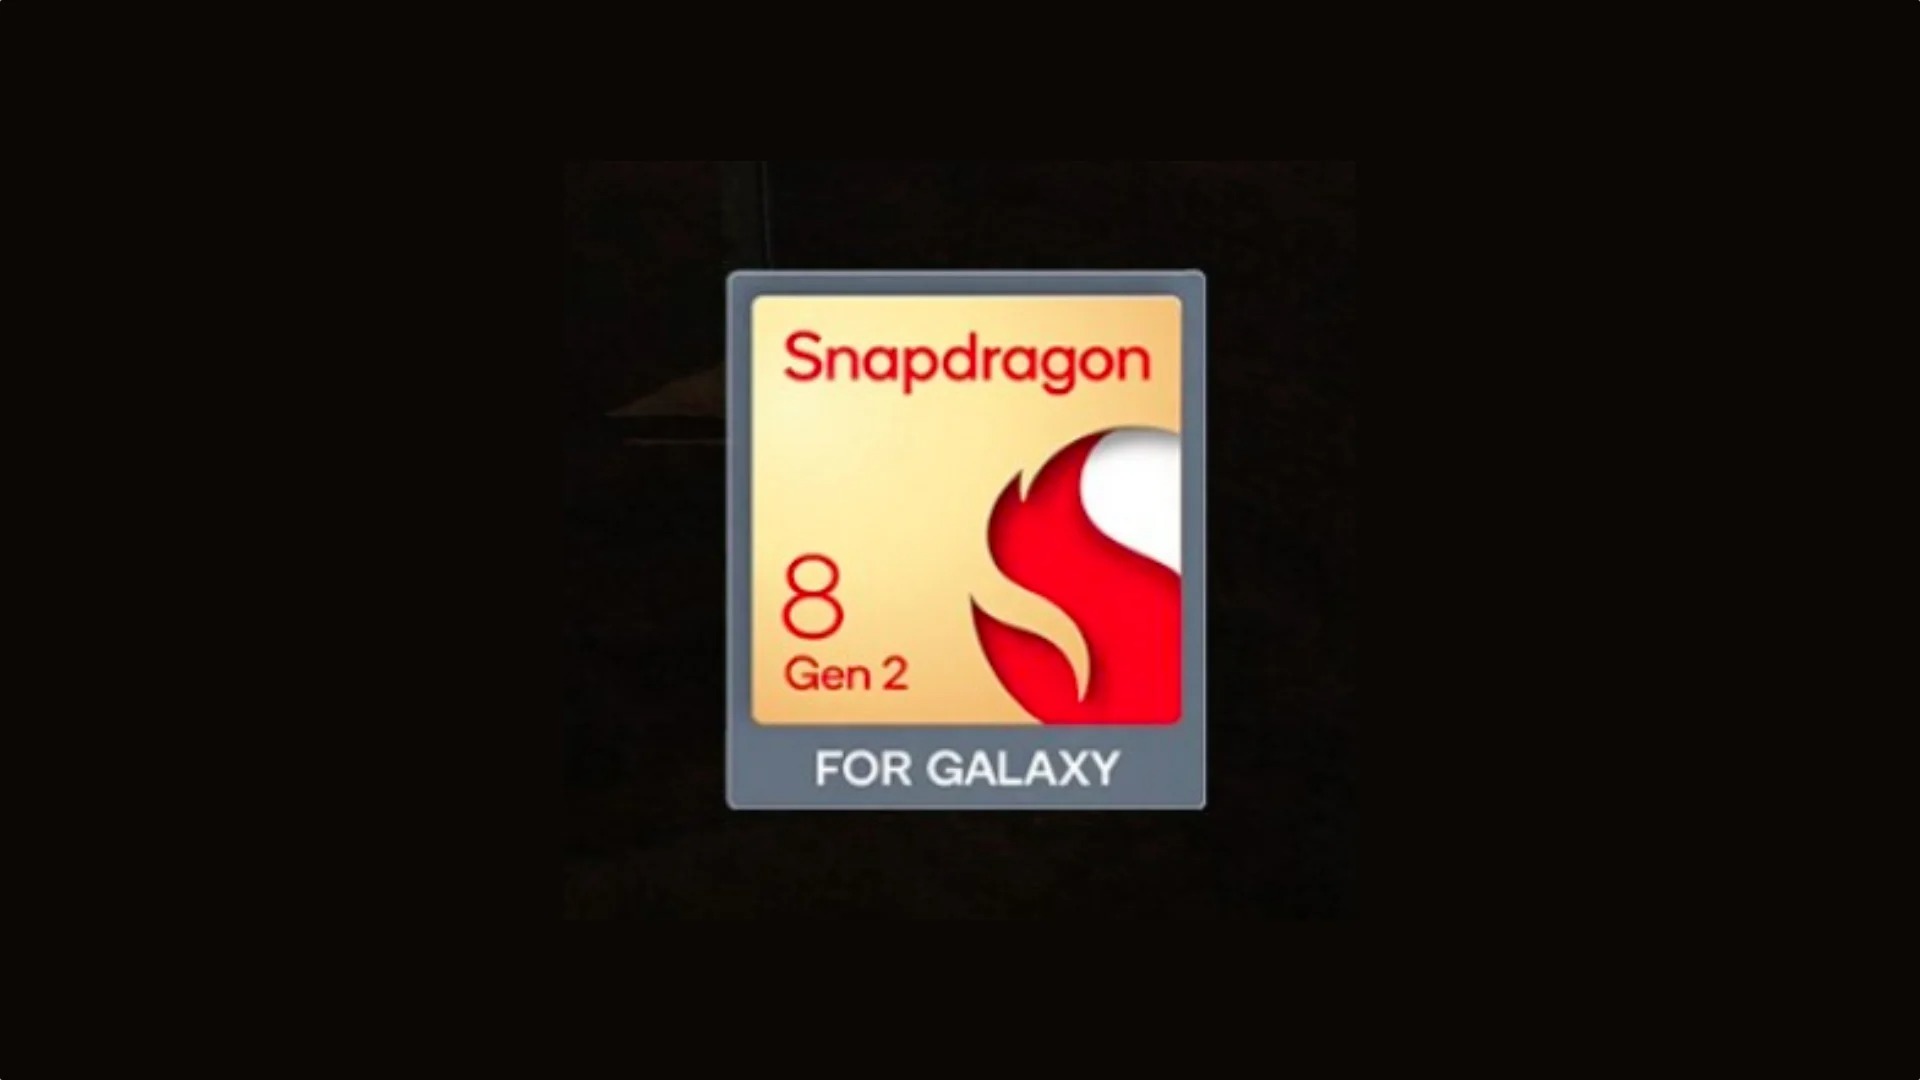 Qualcomm Snapdragon 8 Gen 2 For11111